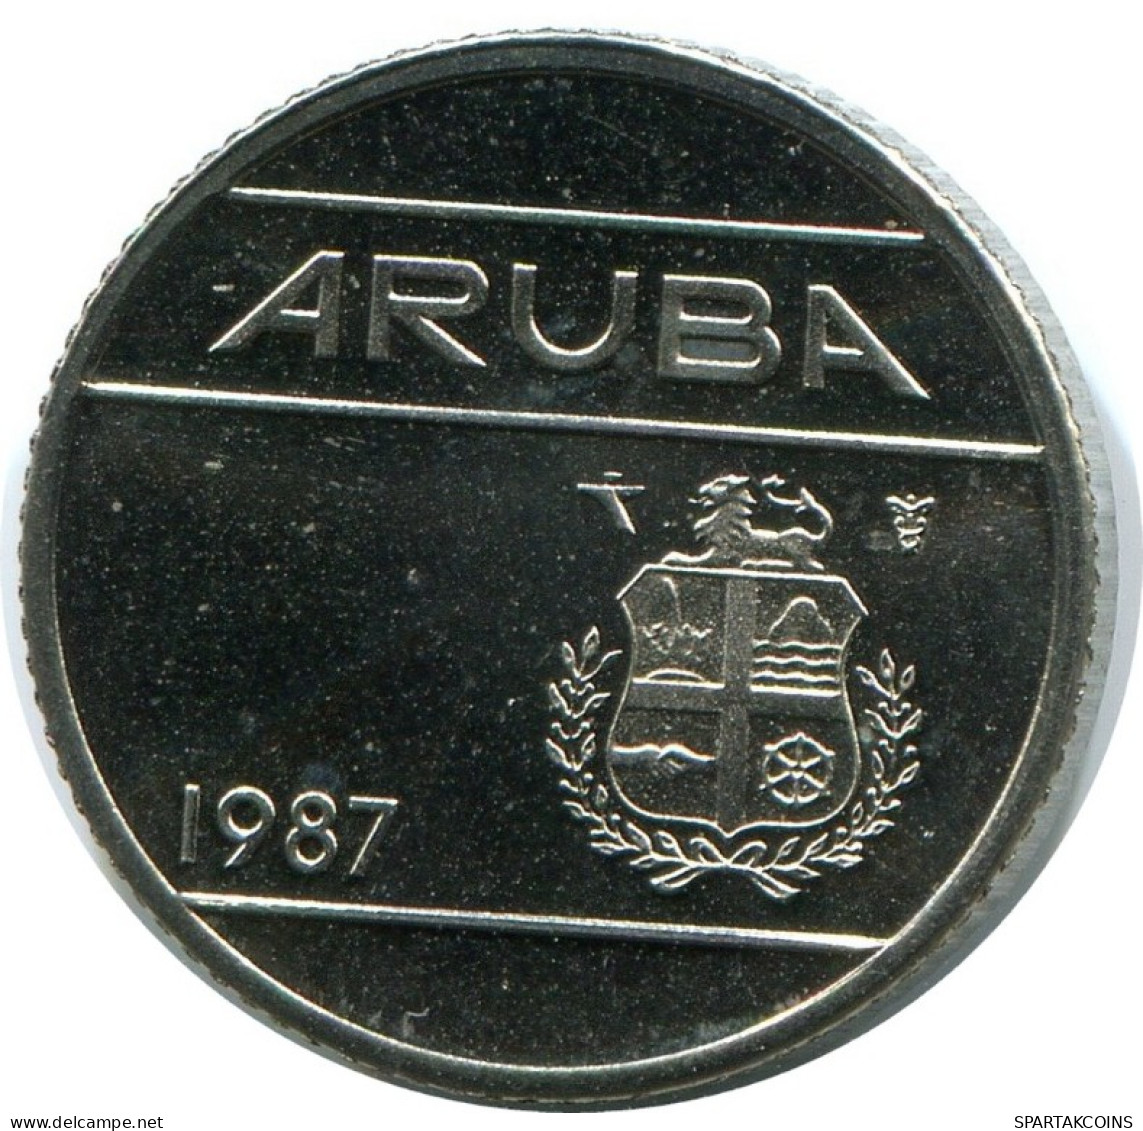 10 CENTS 1987 ARUBA Coin (From BU Mint Set) #AH074.U.A - Aruba